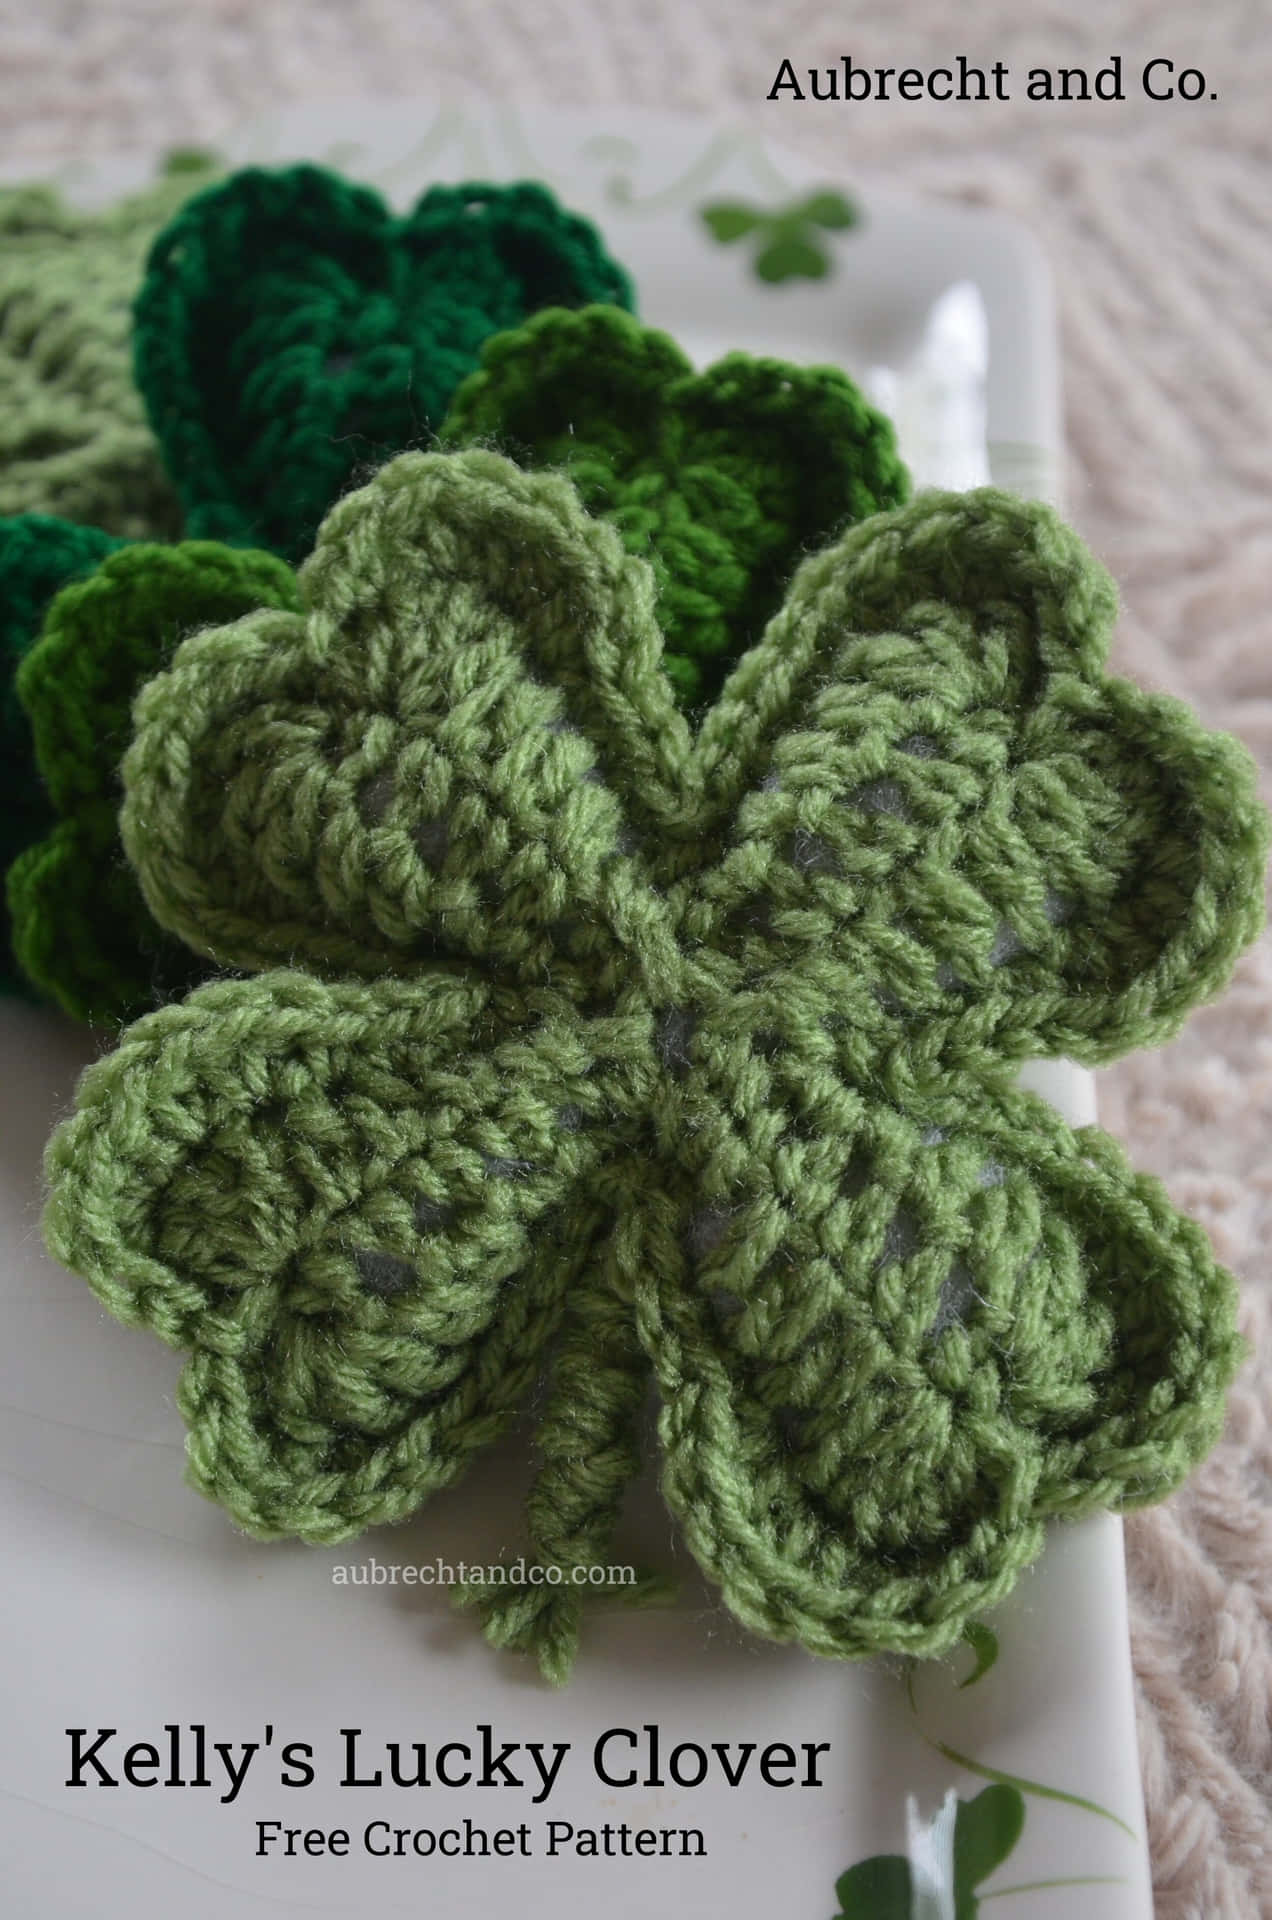 Kelly's Lucky Clover Free Crochet Pattern